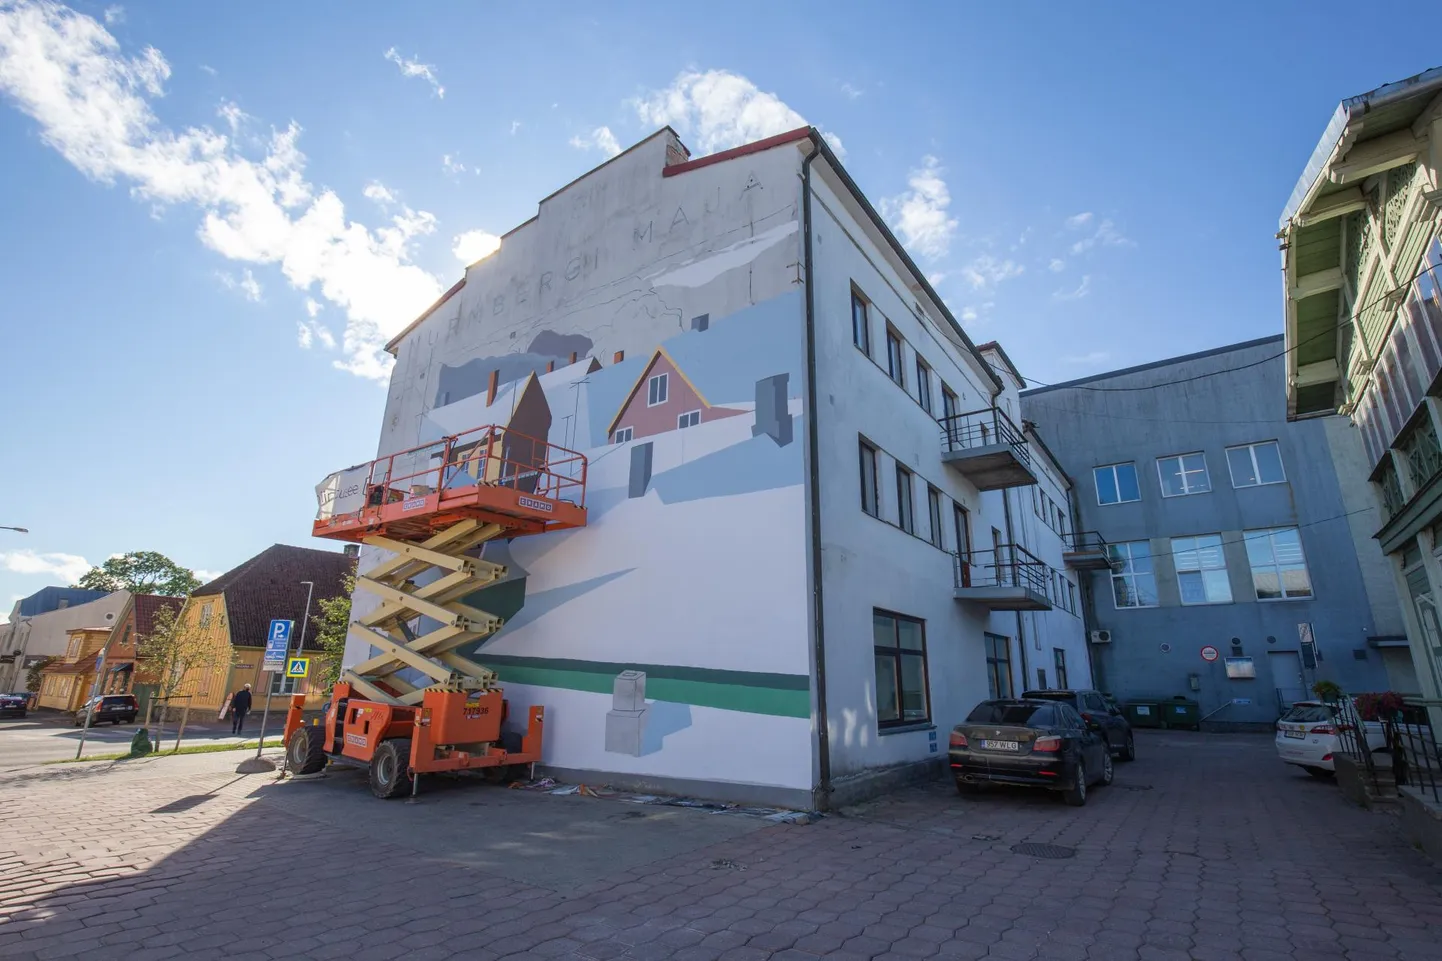 Viljandis Tallinna tänaval endise postkontori maja otsaseinale joonistatakse hiiglaslikku linnavaadet.